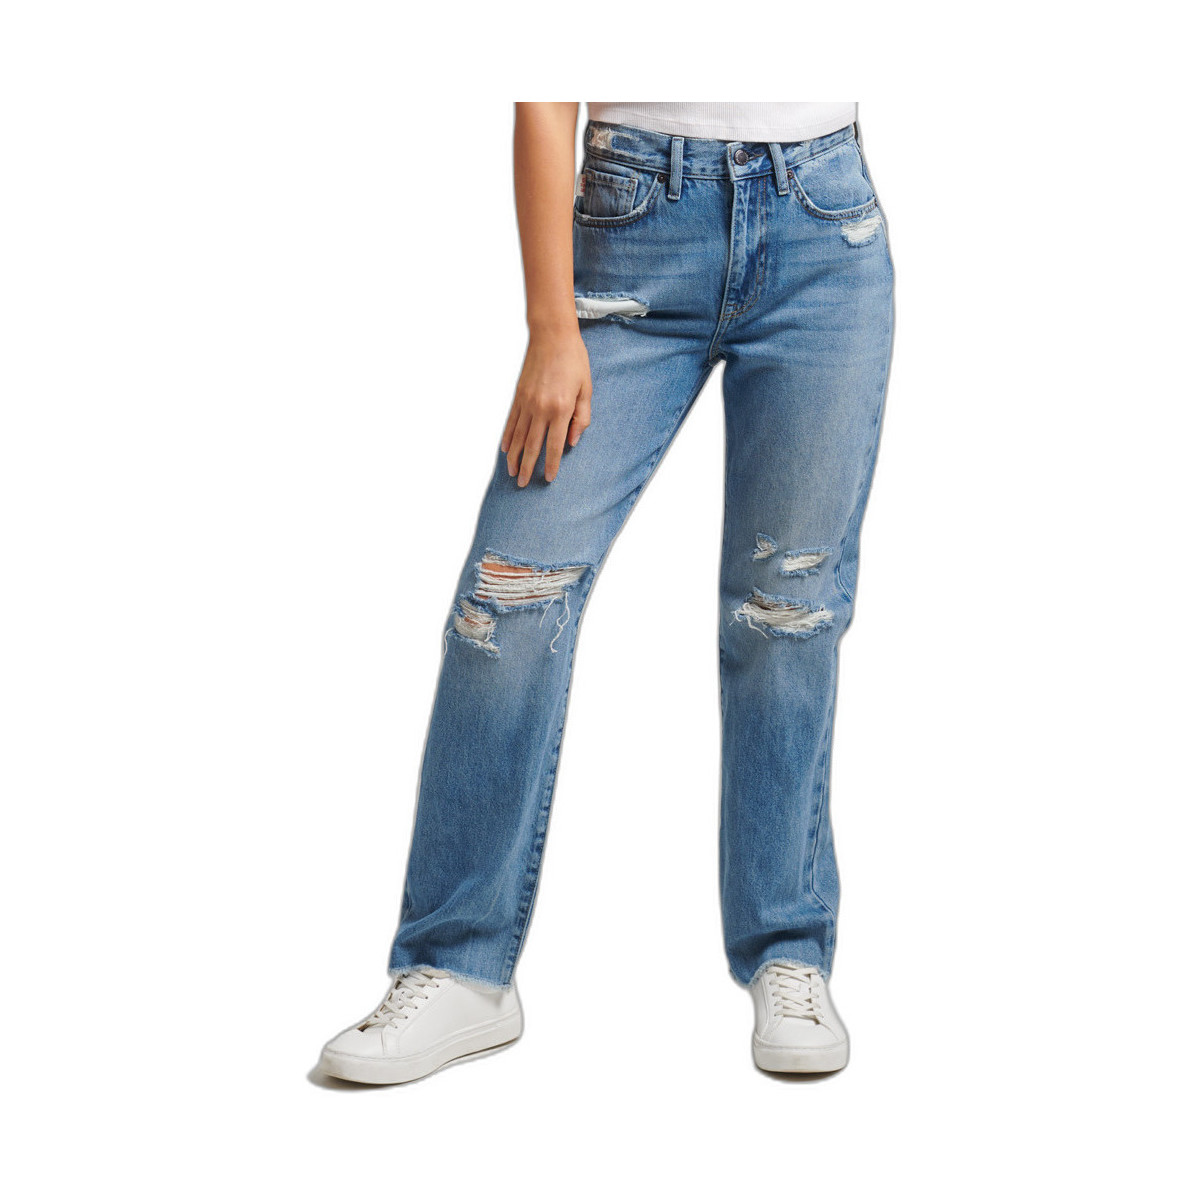 VêSHORTS Femme jean Jeans Superdry jean Jeans droit taille haute femme Bleu